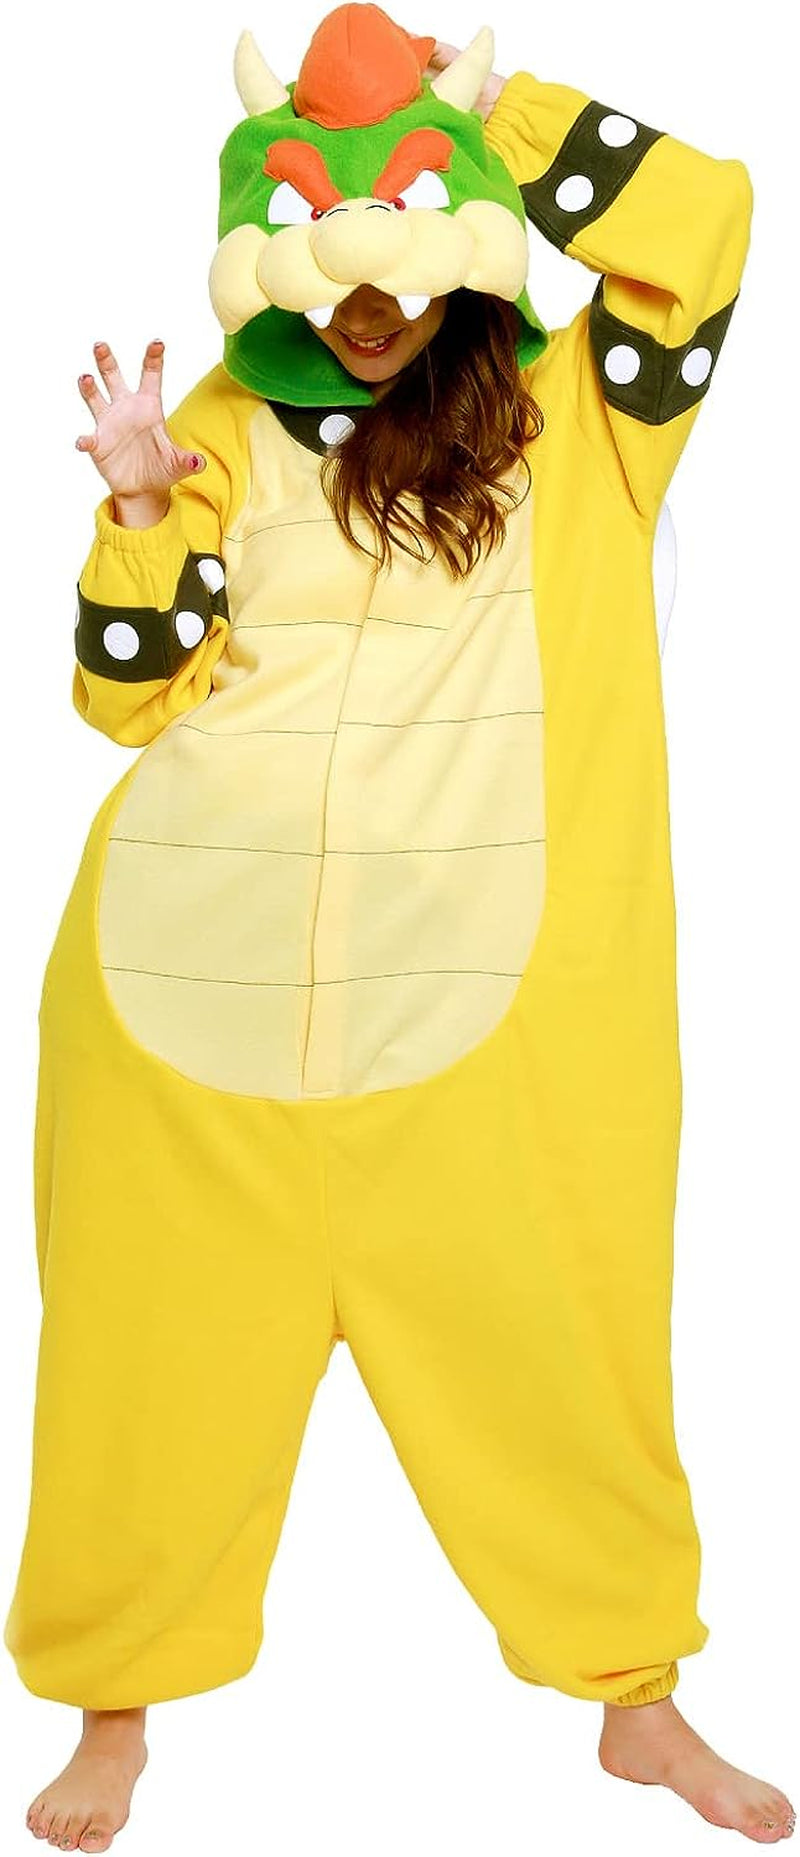 SAZAC Super Mario Bros - Onesie Jumpsuit Halloween Costume (Bowser)